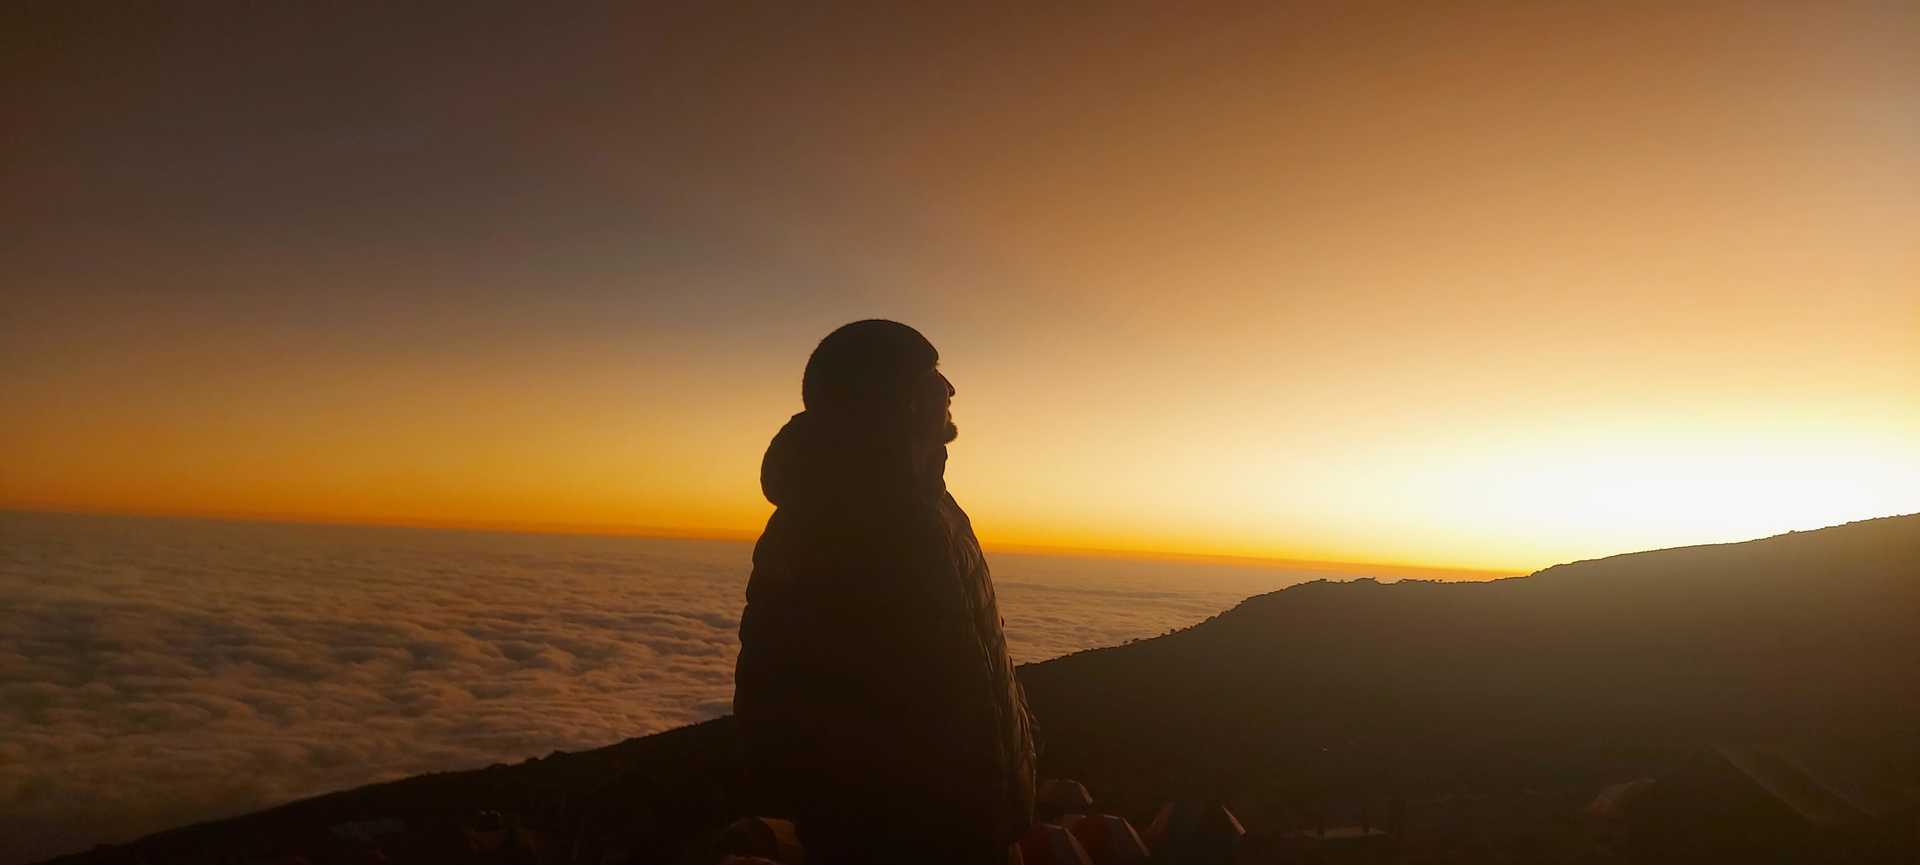 Sam Holland at Kilimanjaro